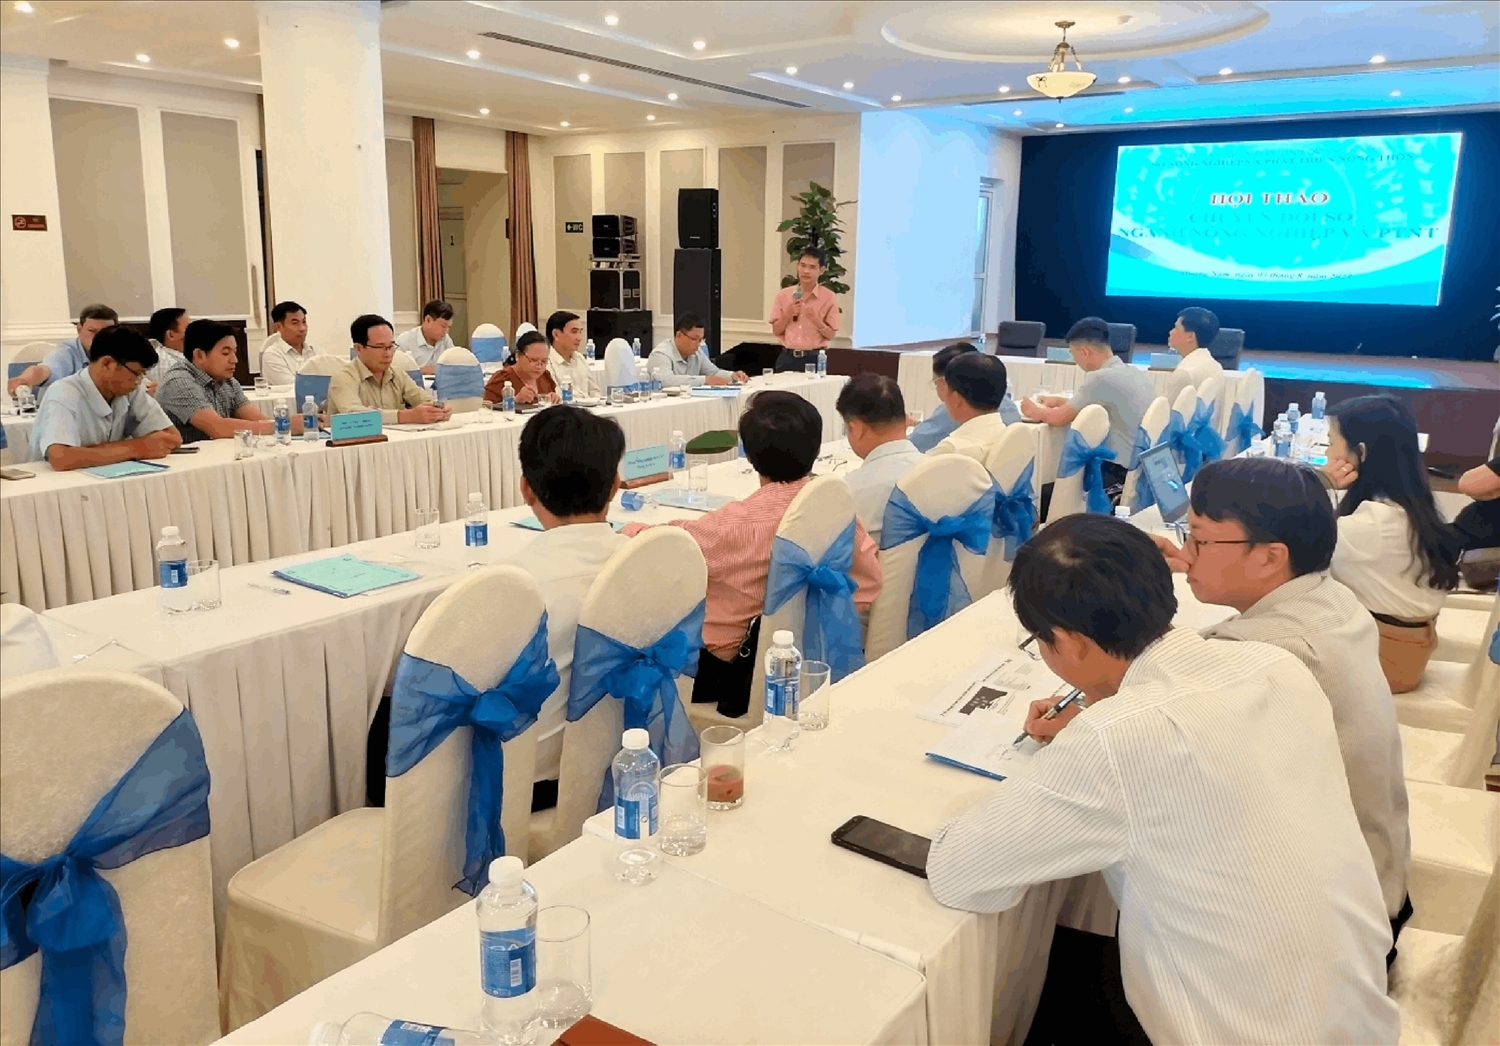 Hội thảo “Giải pháp thực hiện Chuyển đổi số ngành Nông nghiệp Quảng Nam” thu hút nhiều kiến nghị, giải pháp nhằm thực hiện hiệu quả chuyển đổi số trong nông nghiệp.